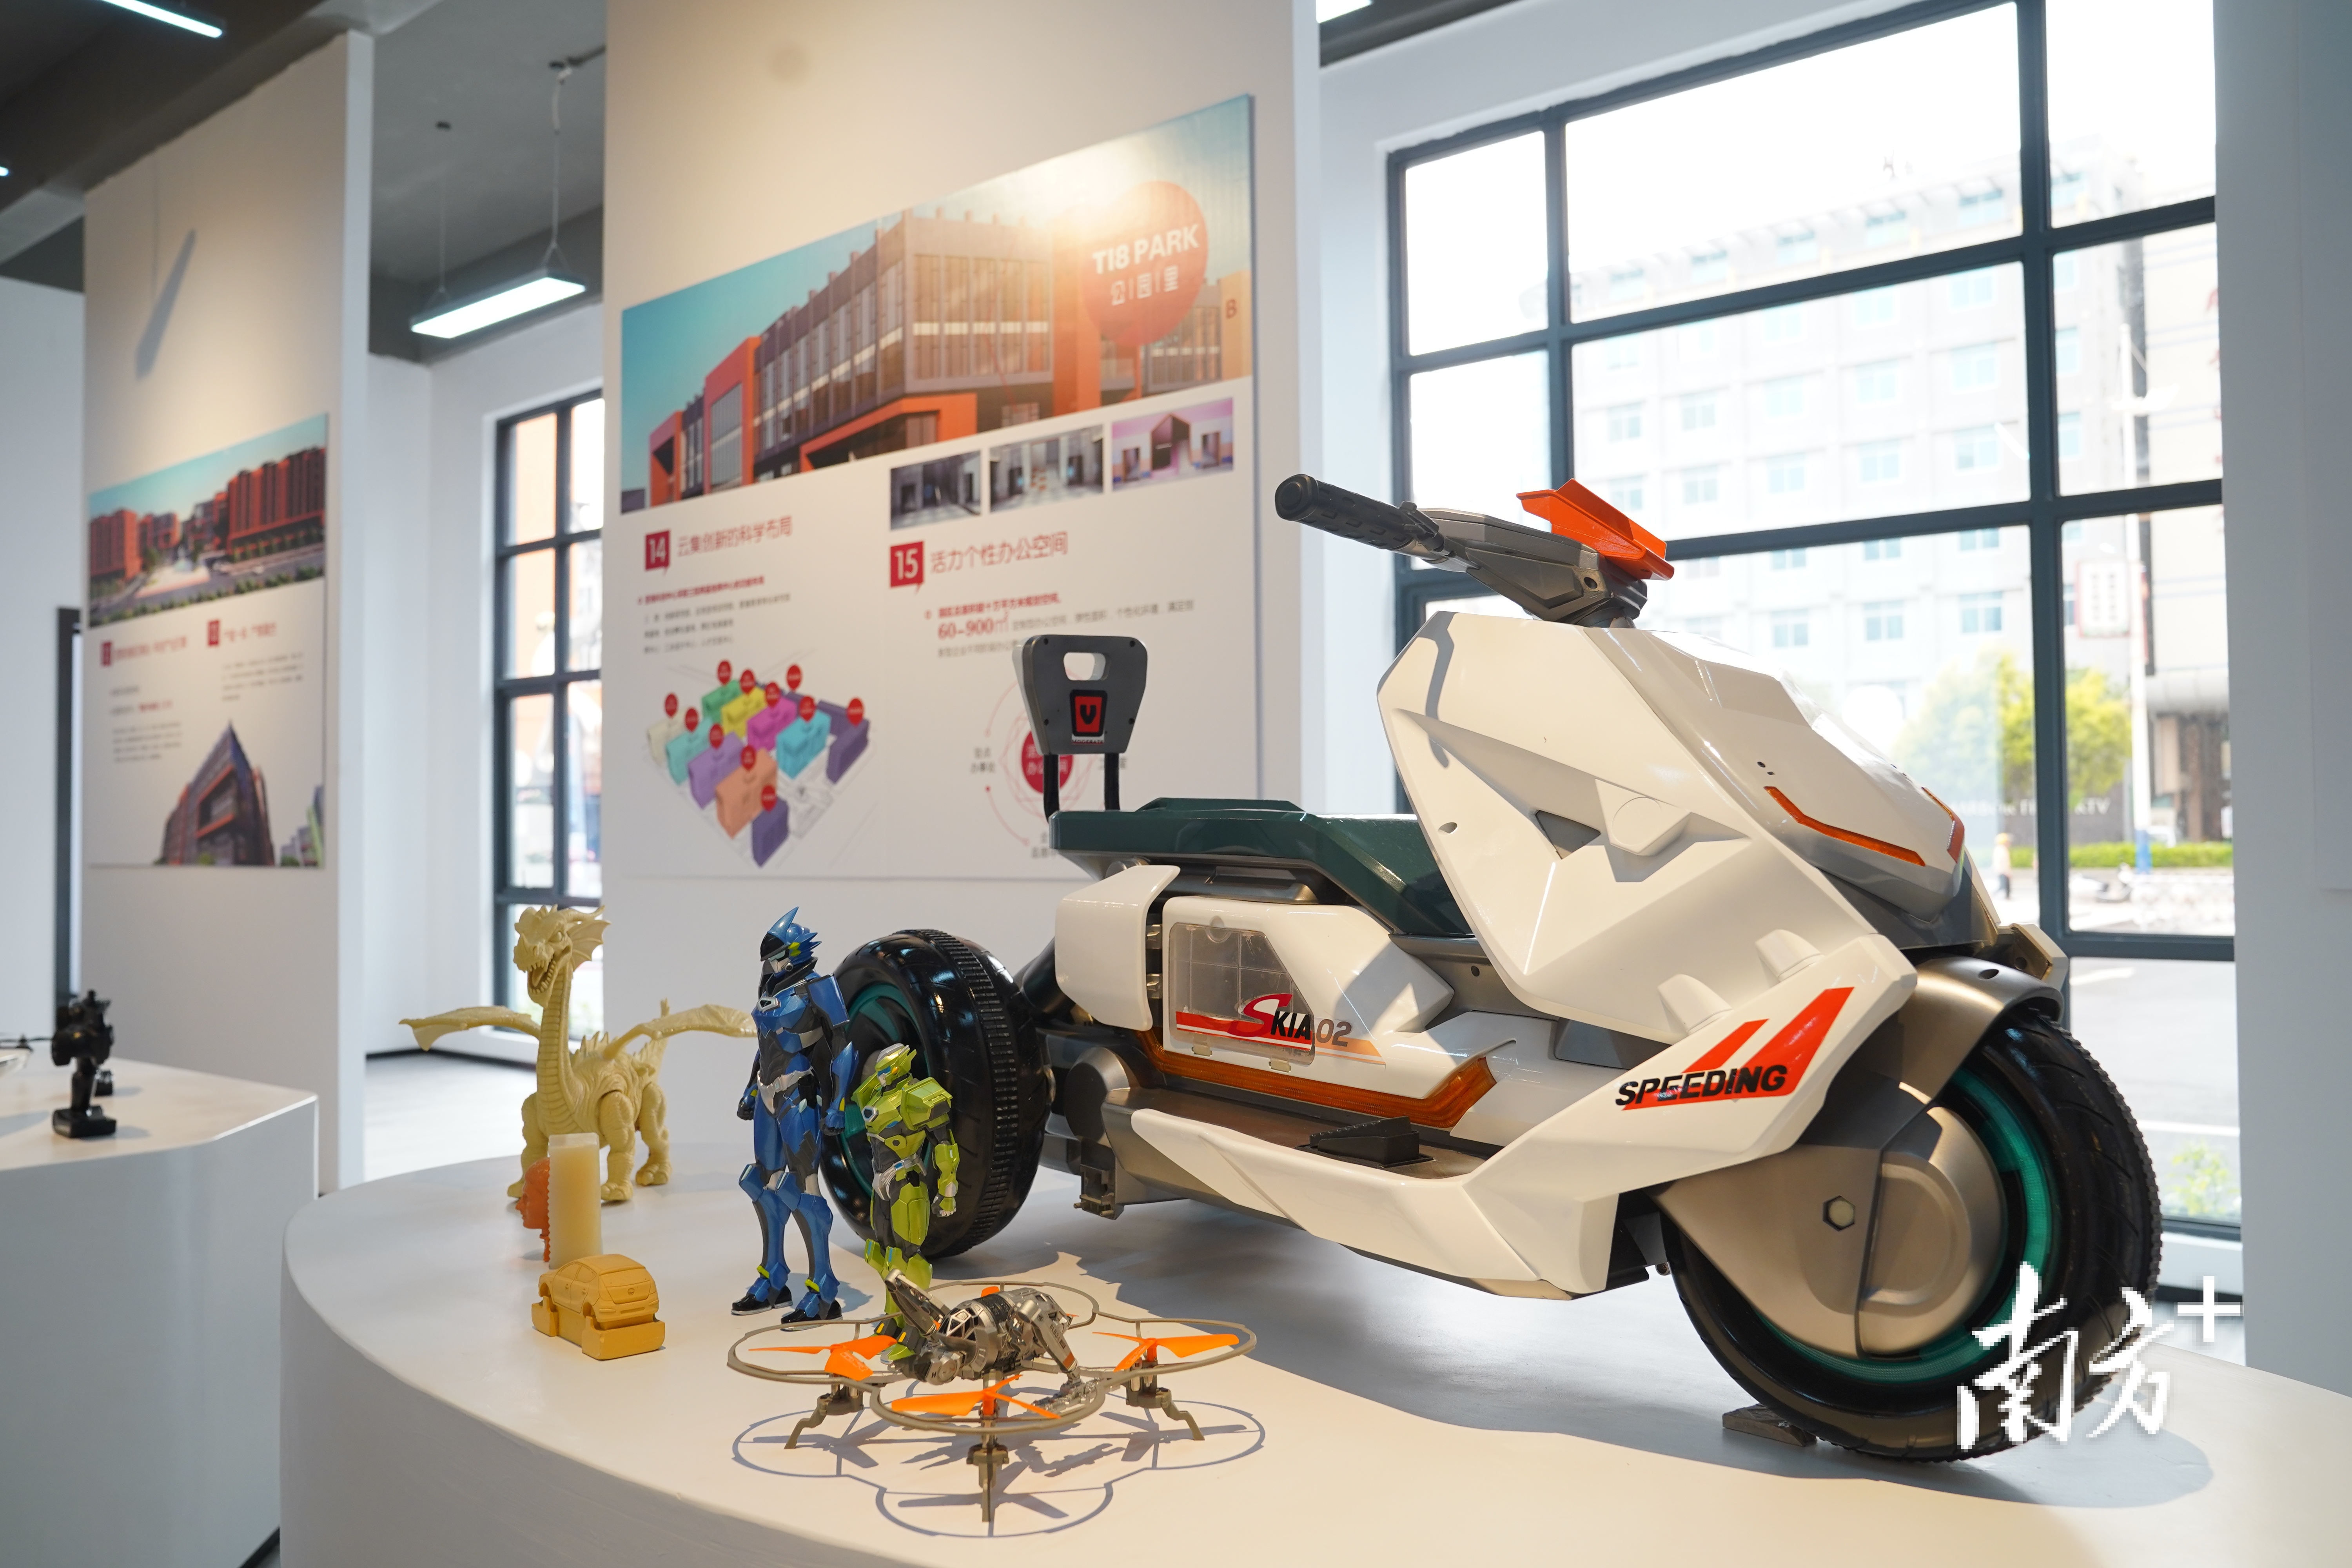 澄海科创中心着重打造文化创意平台,结合澄海玩具特色举办文创展览